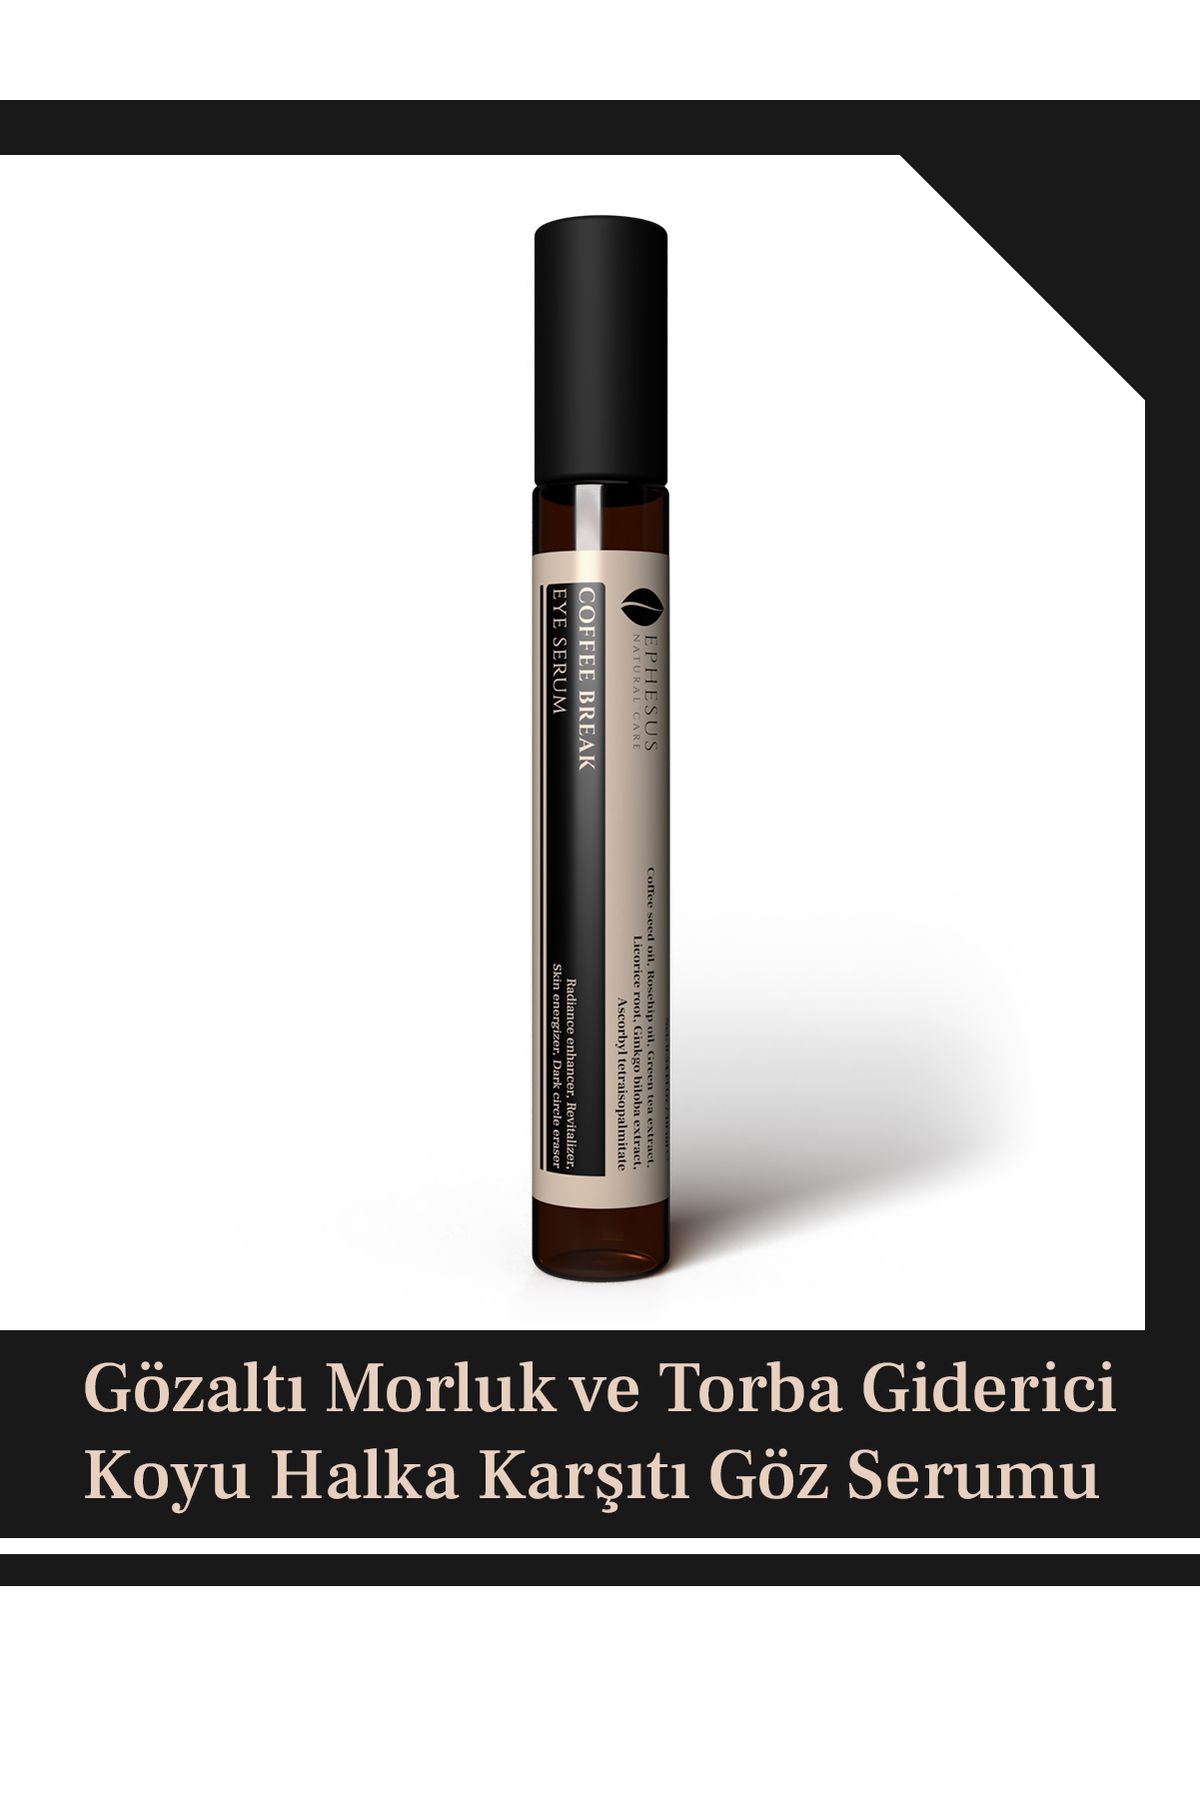 Ephesus Natural Care Gözaltı Morluk Ve Torba Giderici, Kırışıklık Karşıtı Serum – Coffee break eye serum